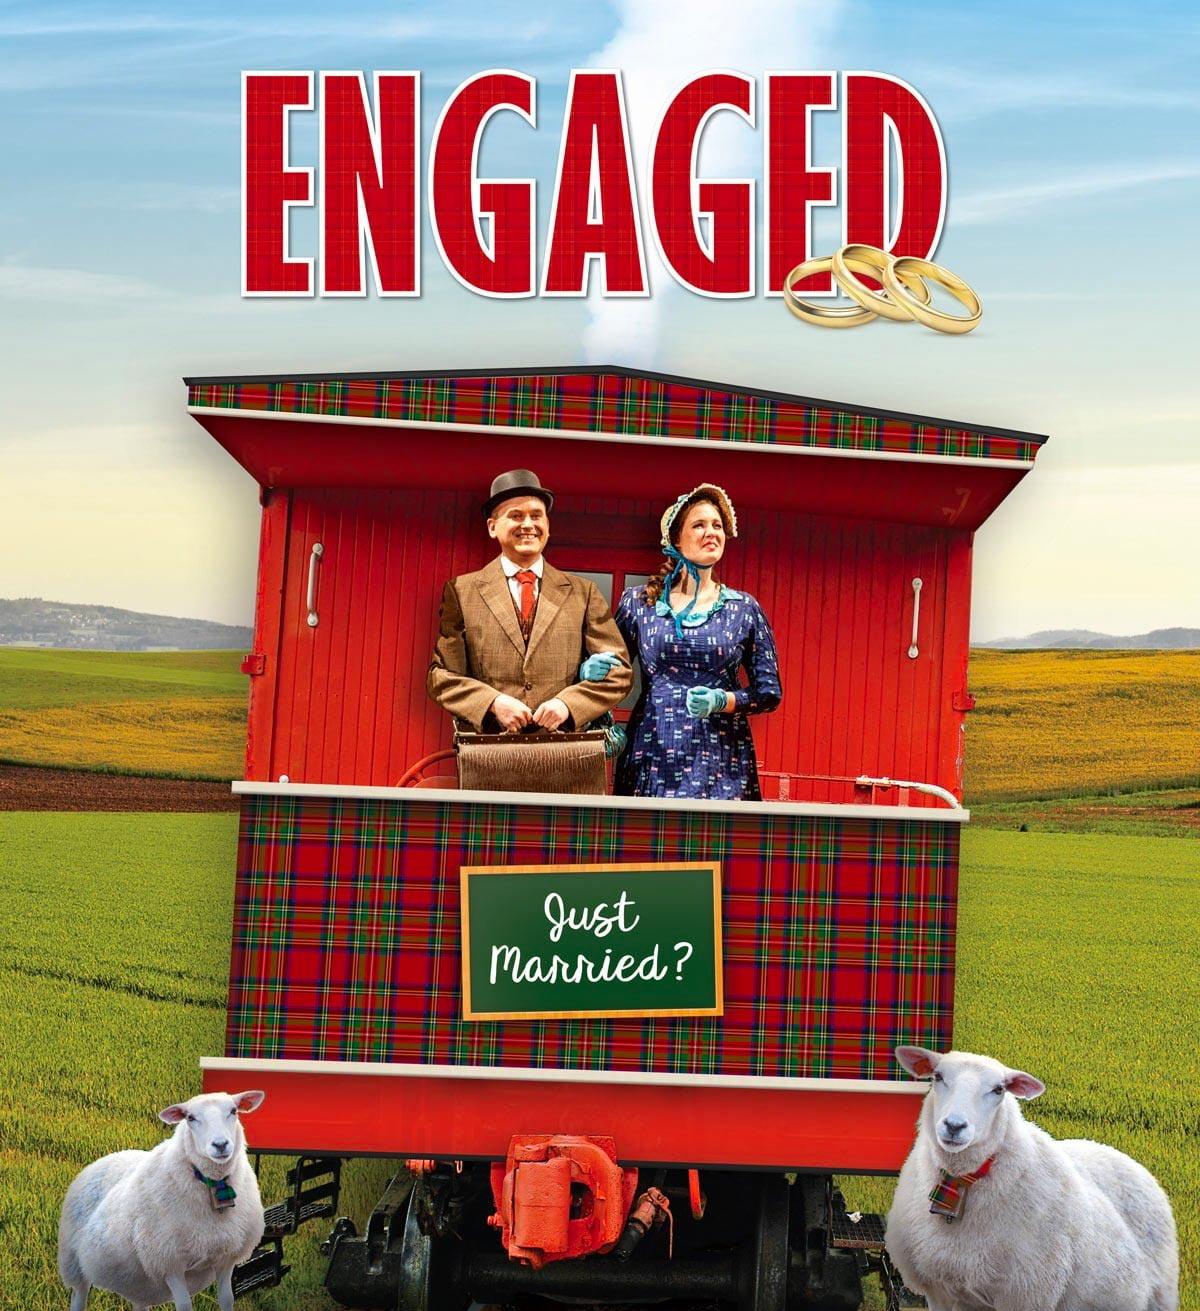 Engaged! Season 2019 - Gilbert & Sullivan Opera Victoria